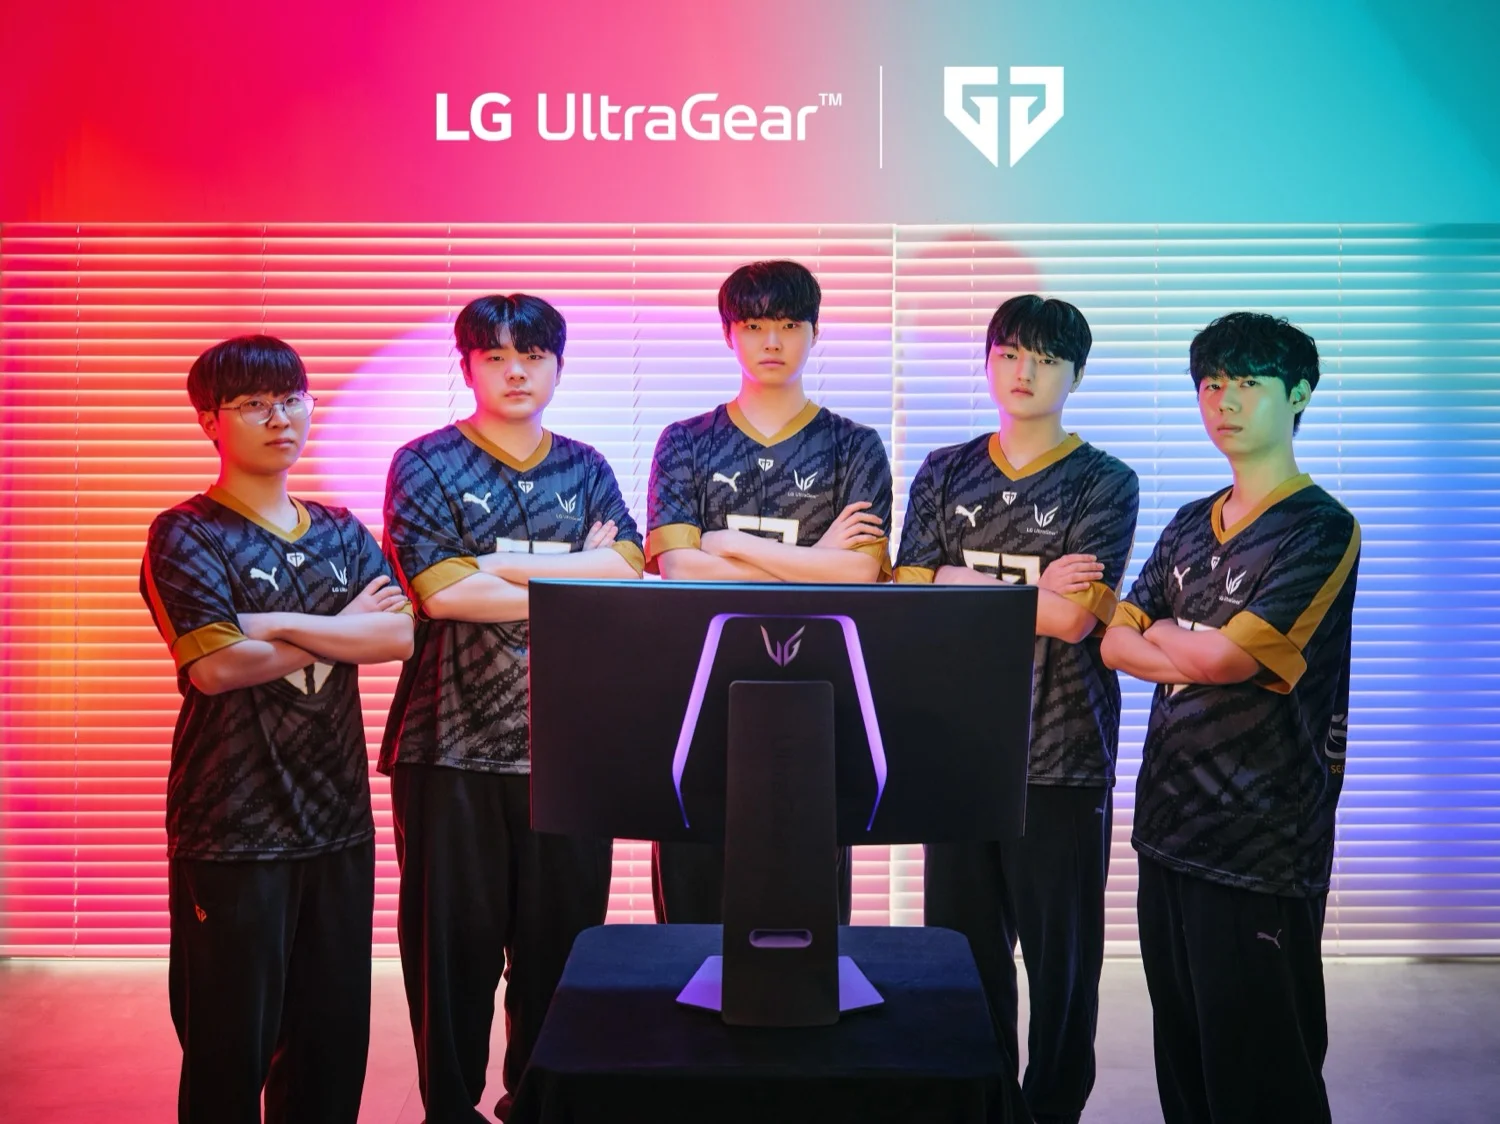 LG UltraGear a la vanguardia de los eSports